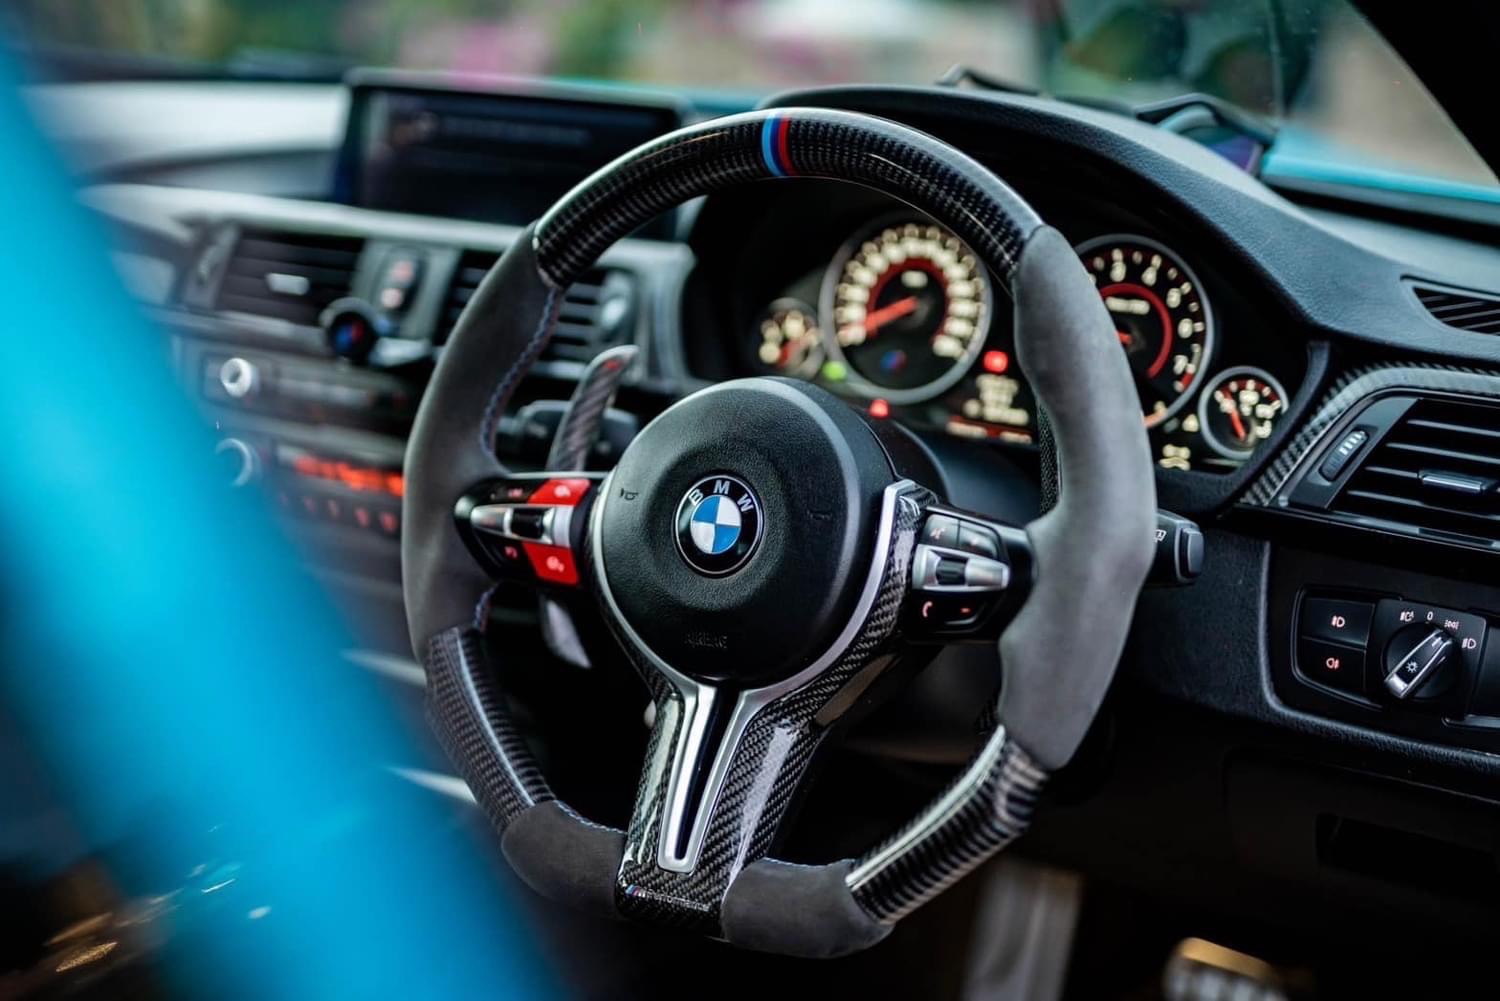 เจ้าของขายเอง 2014 BMW 320i LCI M3 F80 2.0 Luxury ของแต่งแท้ เกือบล้าน สีข้างในสีขาว